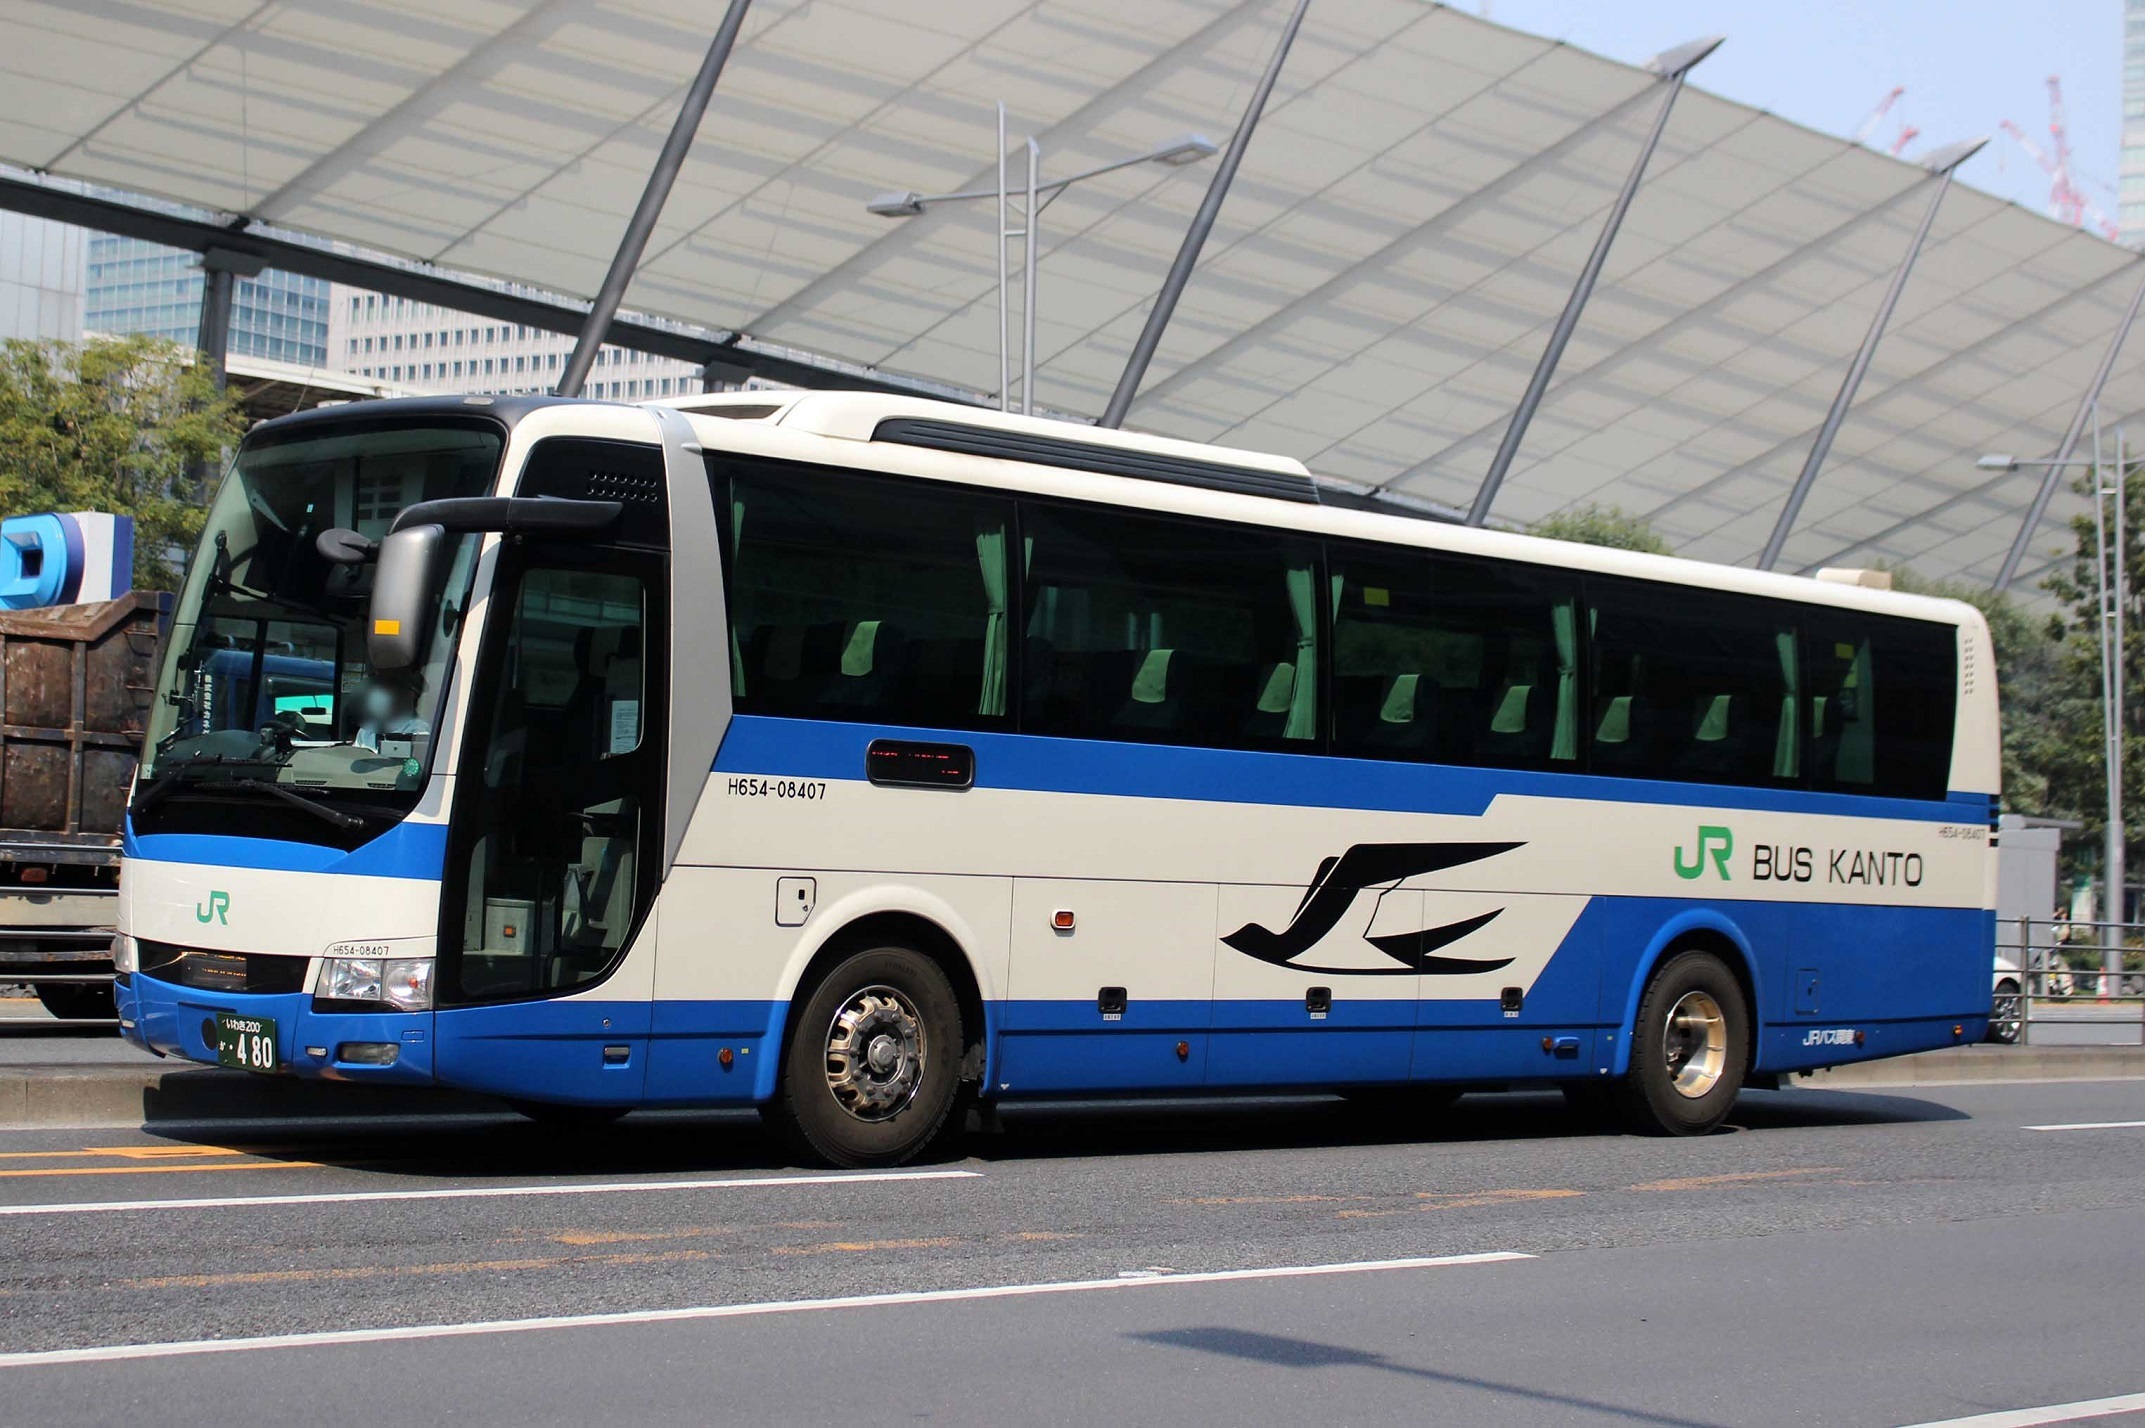 JRバス関東 H654-08407